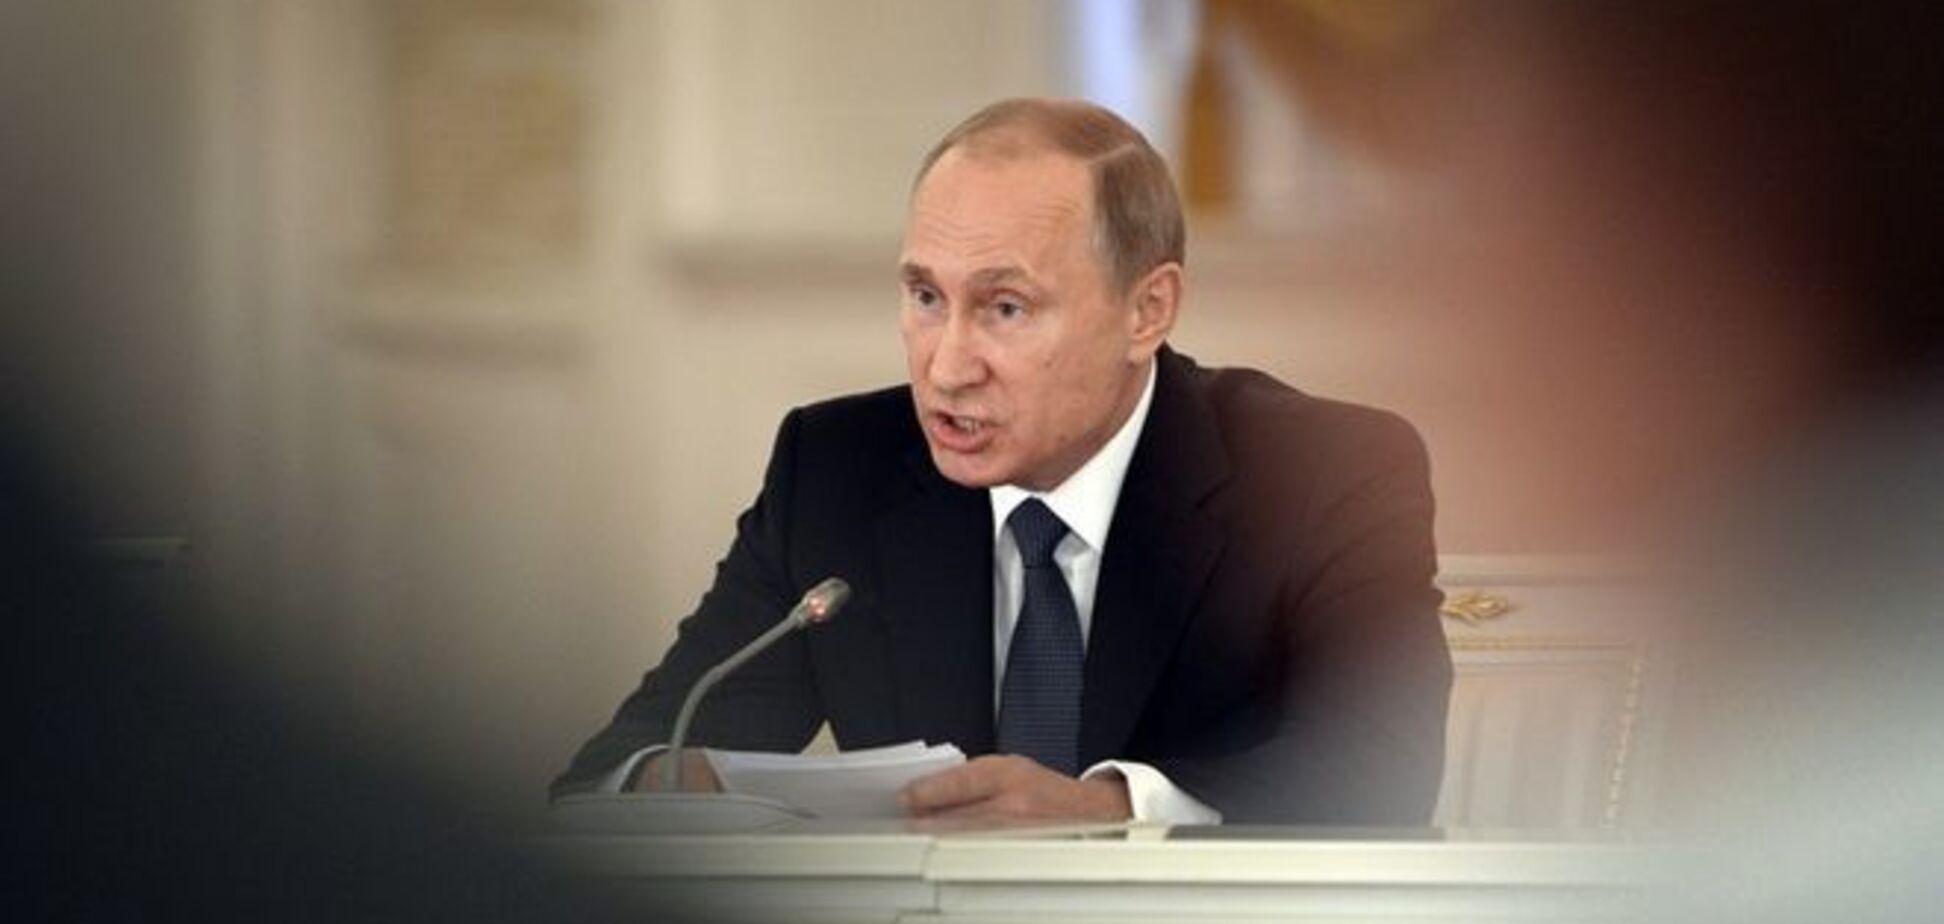 Доклад 'Путин. Война' опроверг миф о 'добровольцах' на Донбассе - Яшин